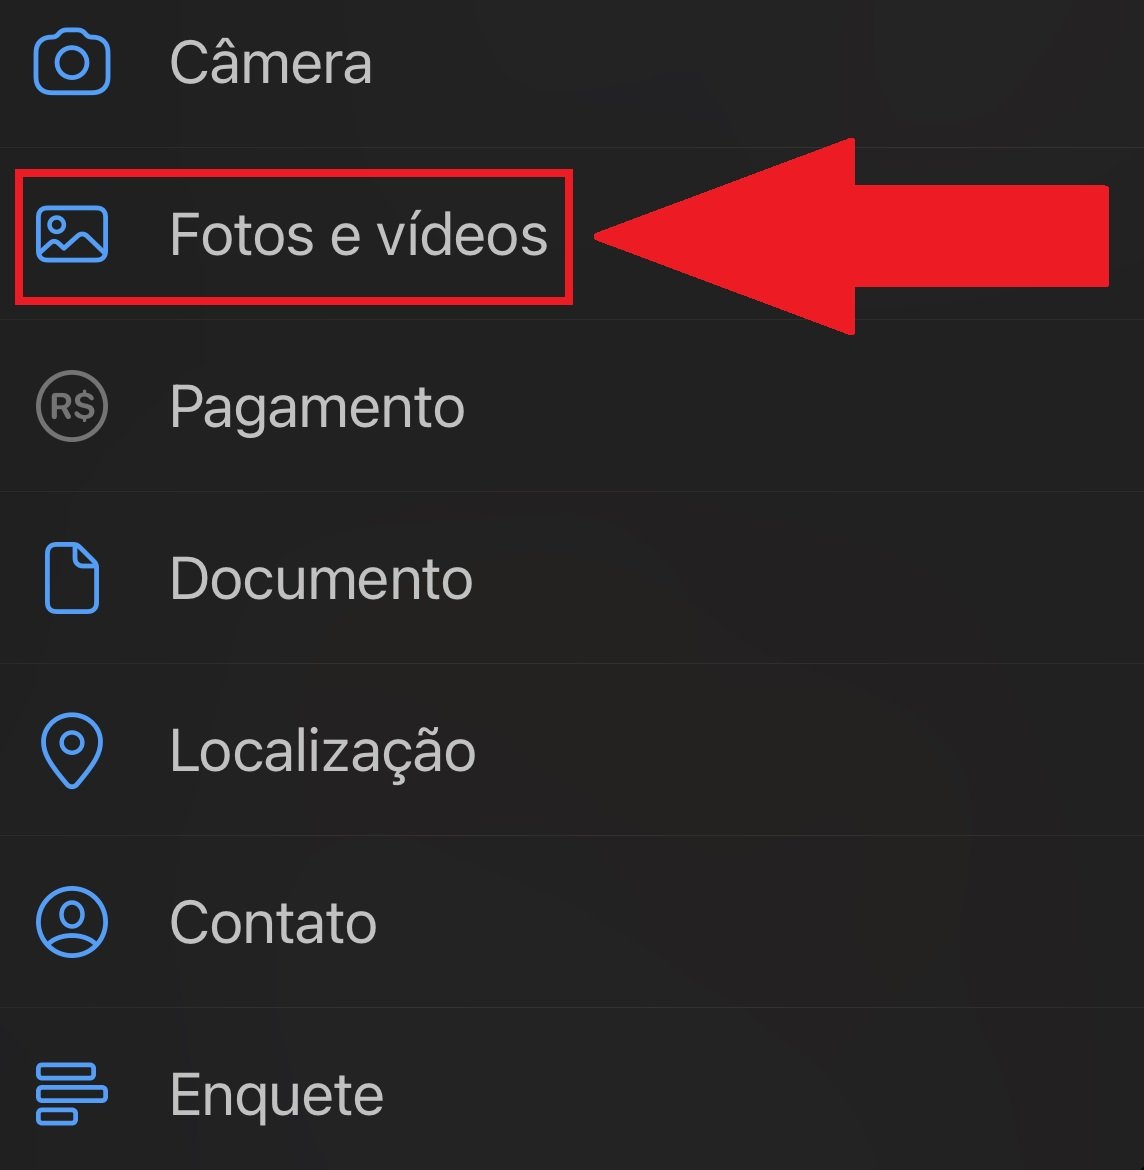 Selecione a opção para enviar "Fotos e vídeos"